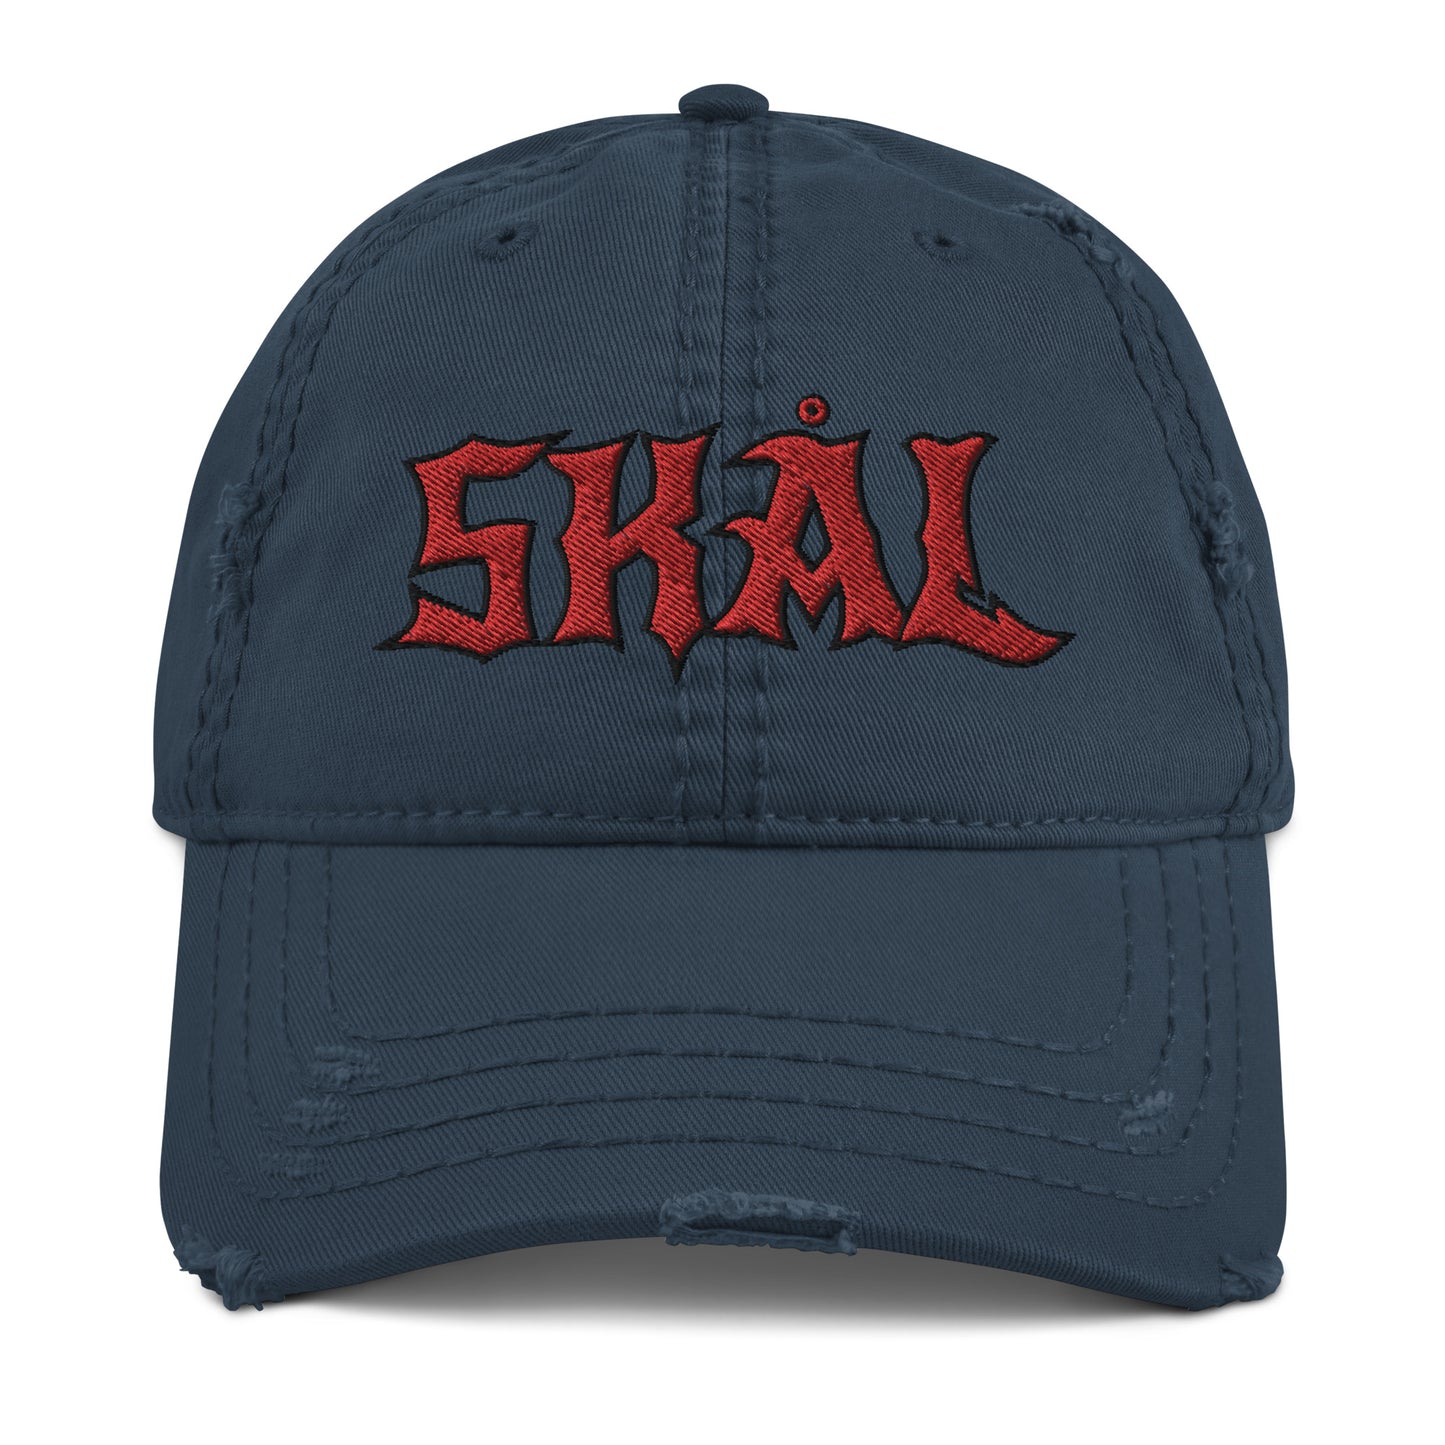 Viking Skål Embroidered Dad Hat